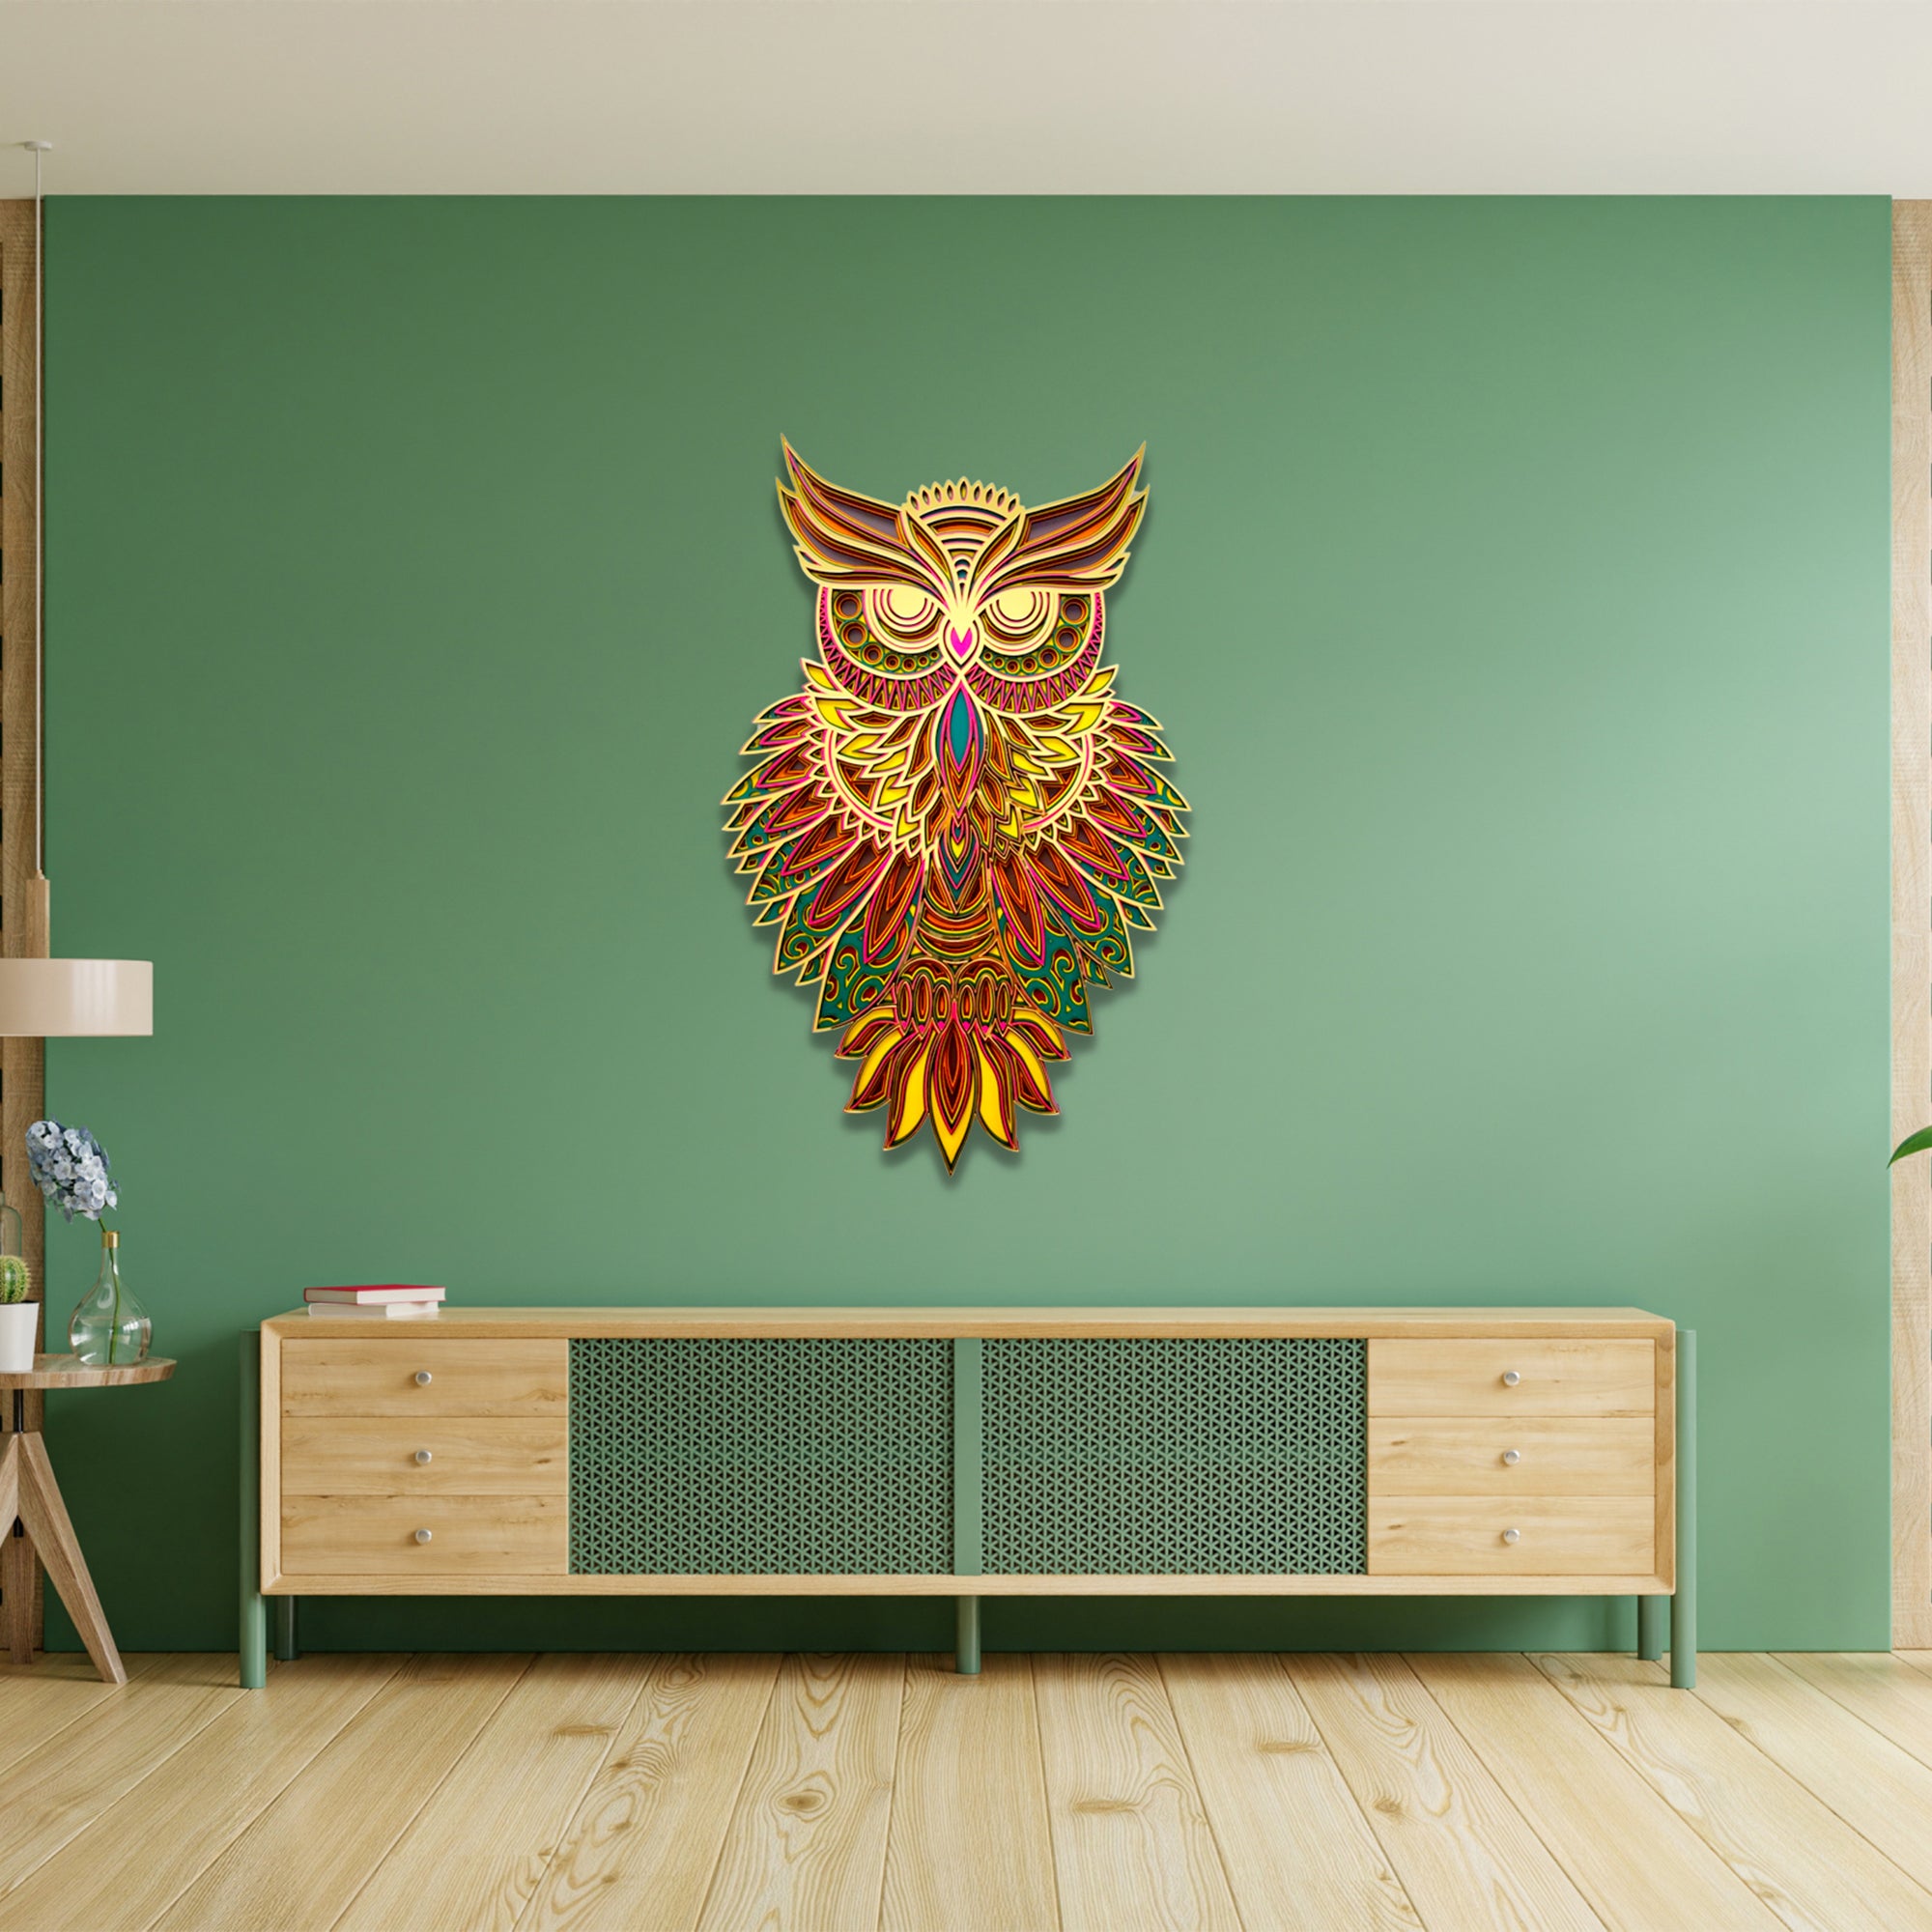 Buy Owl Mandala Wall Decor